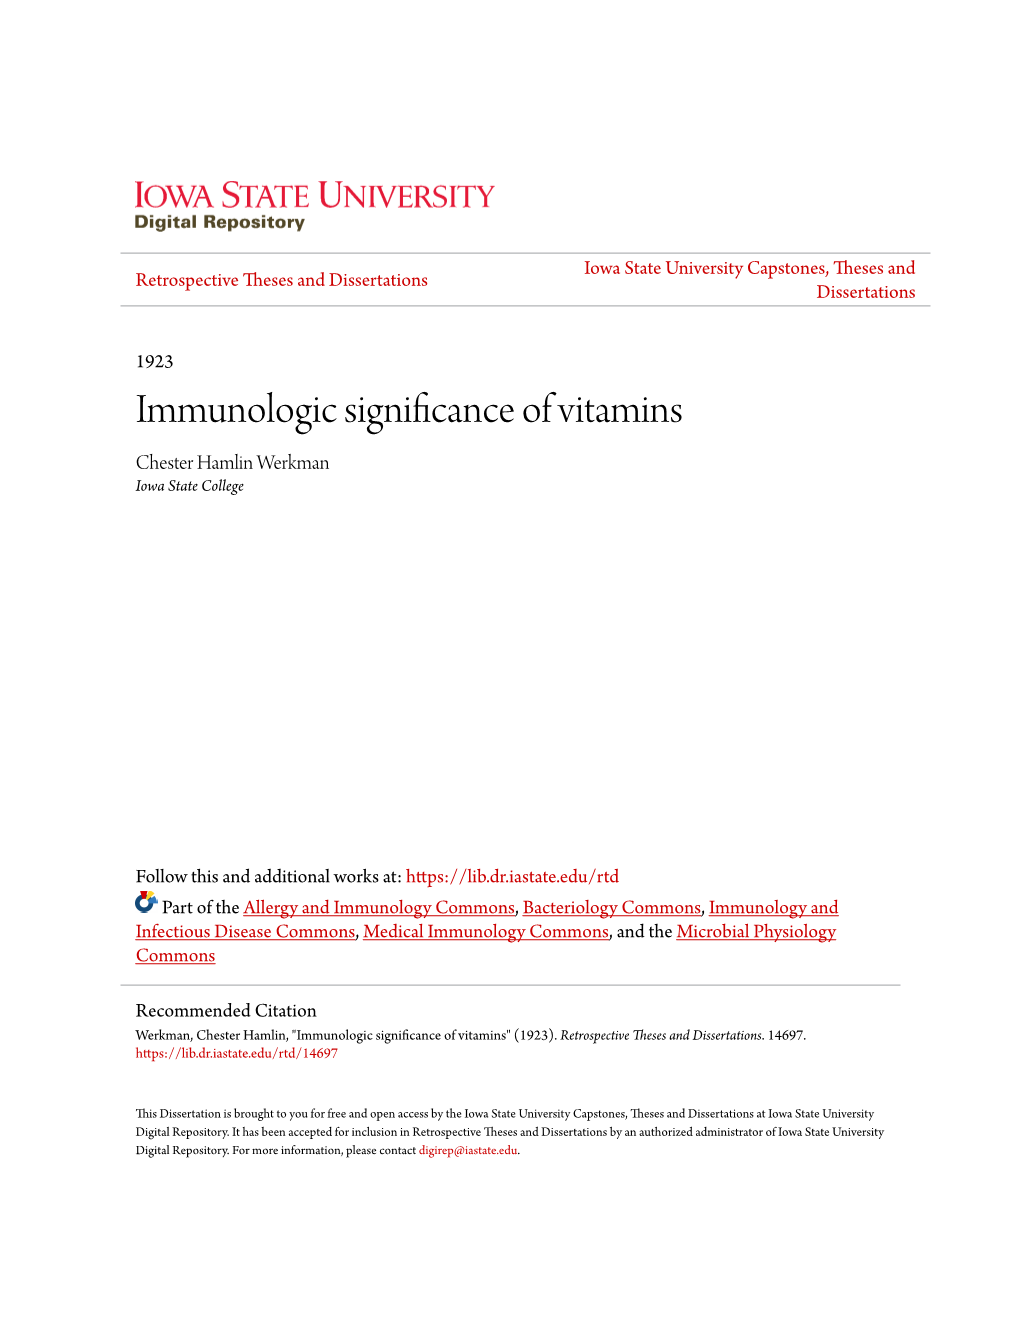 Immunologic Significance of Vitamins Chester Hamlin Werkman Iowa State College